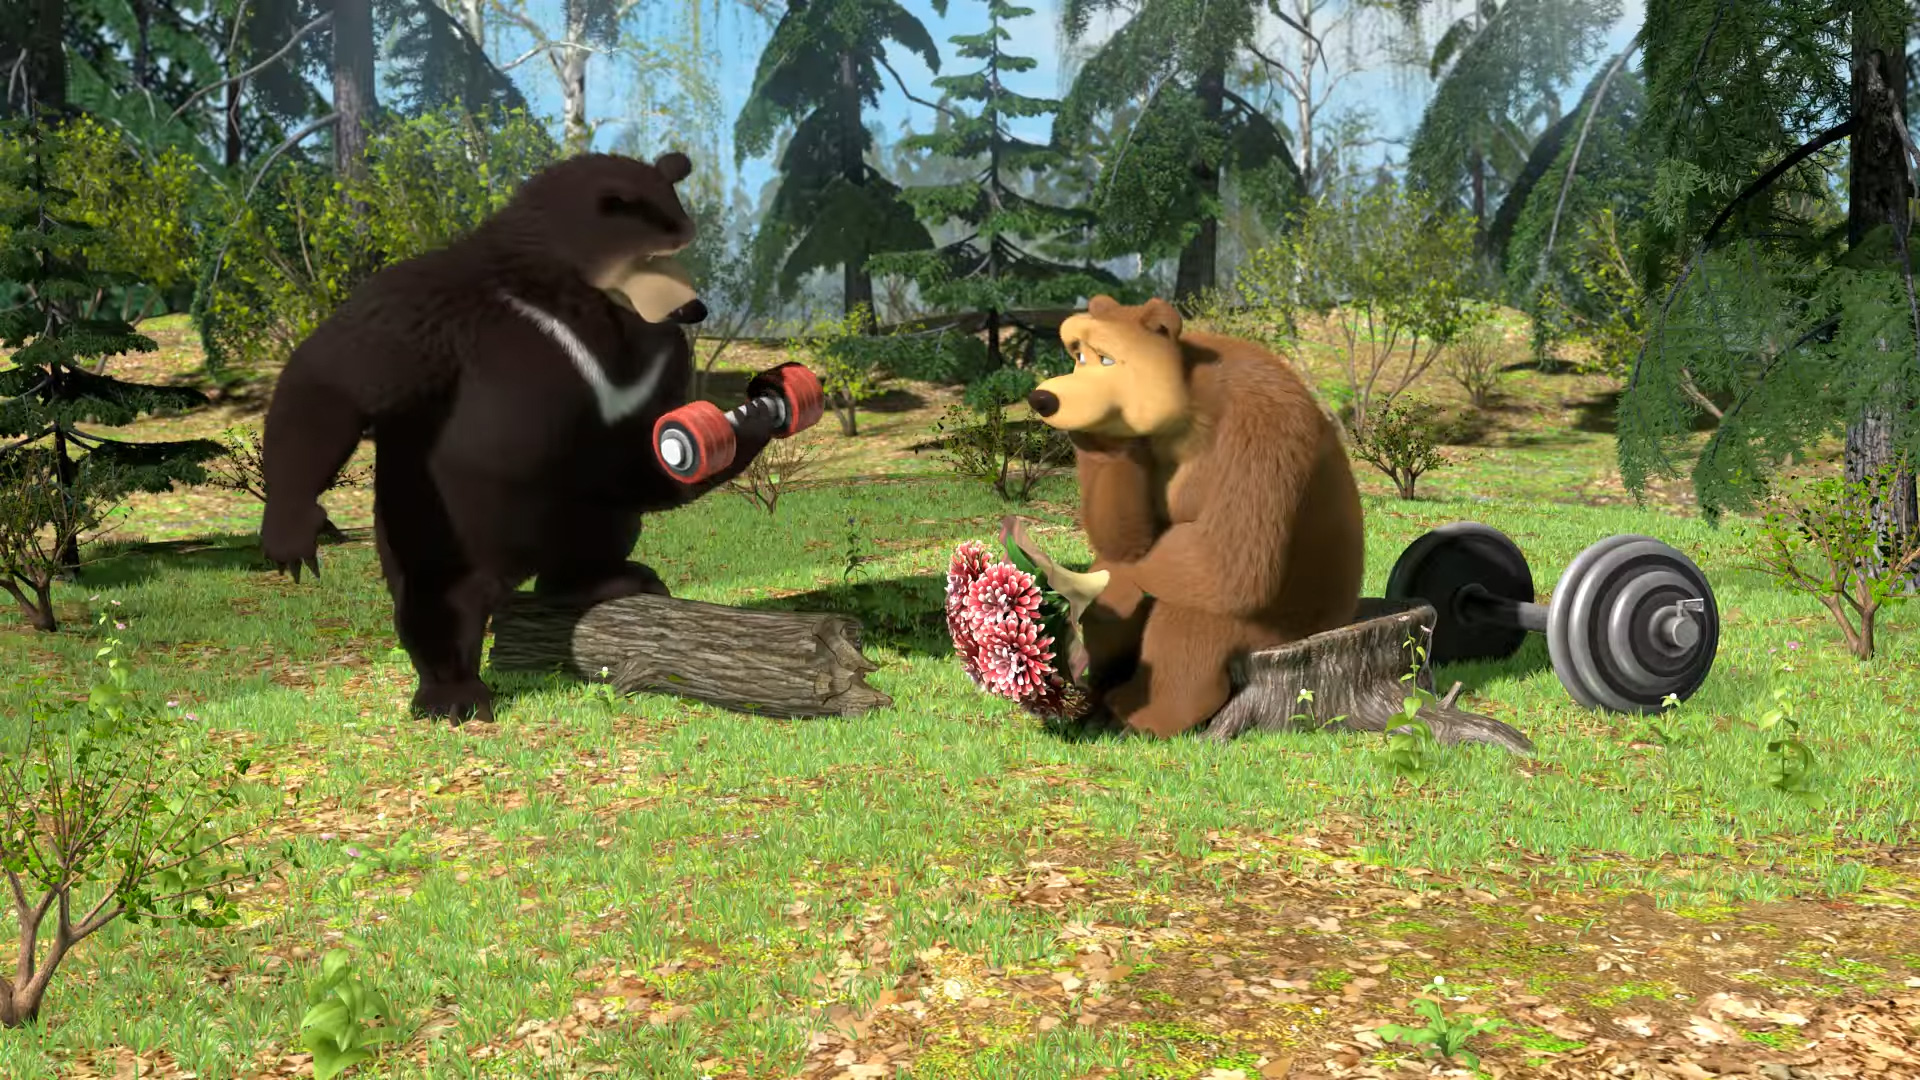 Короткие видео сюжеты. Маша и медведь Гималайский медведь. Маша и медведь Гималайский медведь и Медведица. Гималайский медведь из Маша и медведь. Гималайский медведь из мультсериала "Маша и медведь".